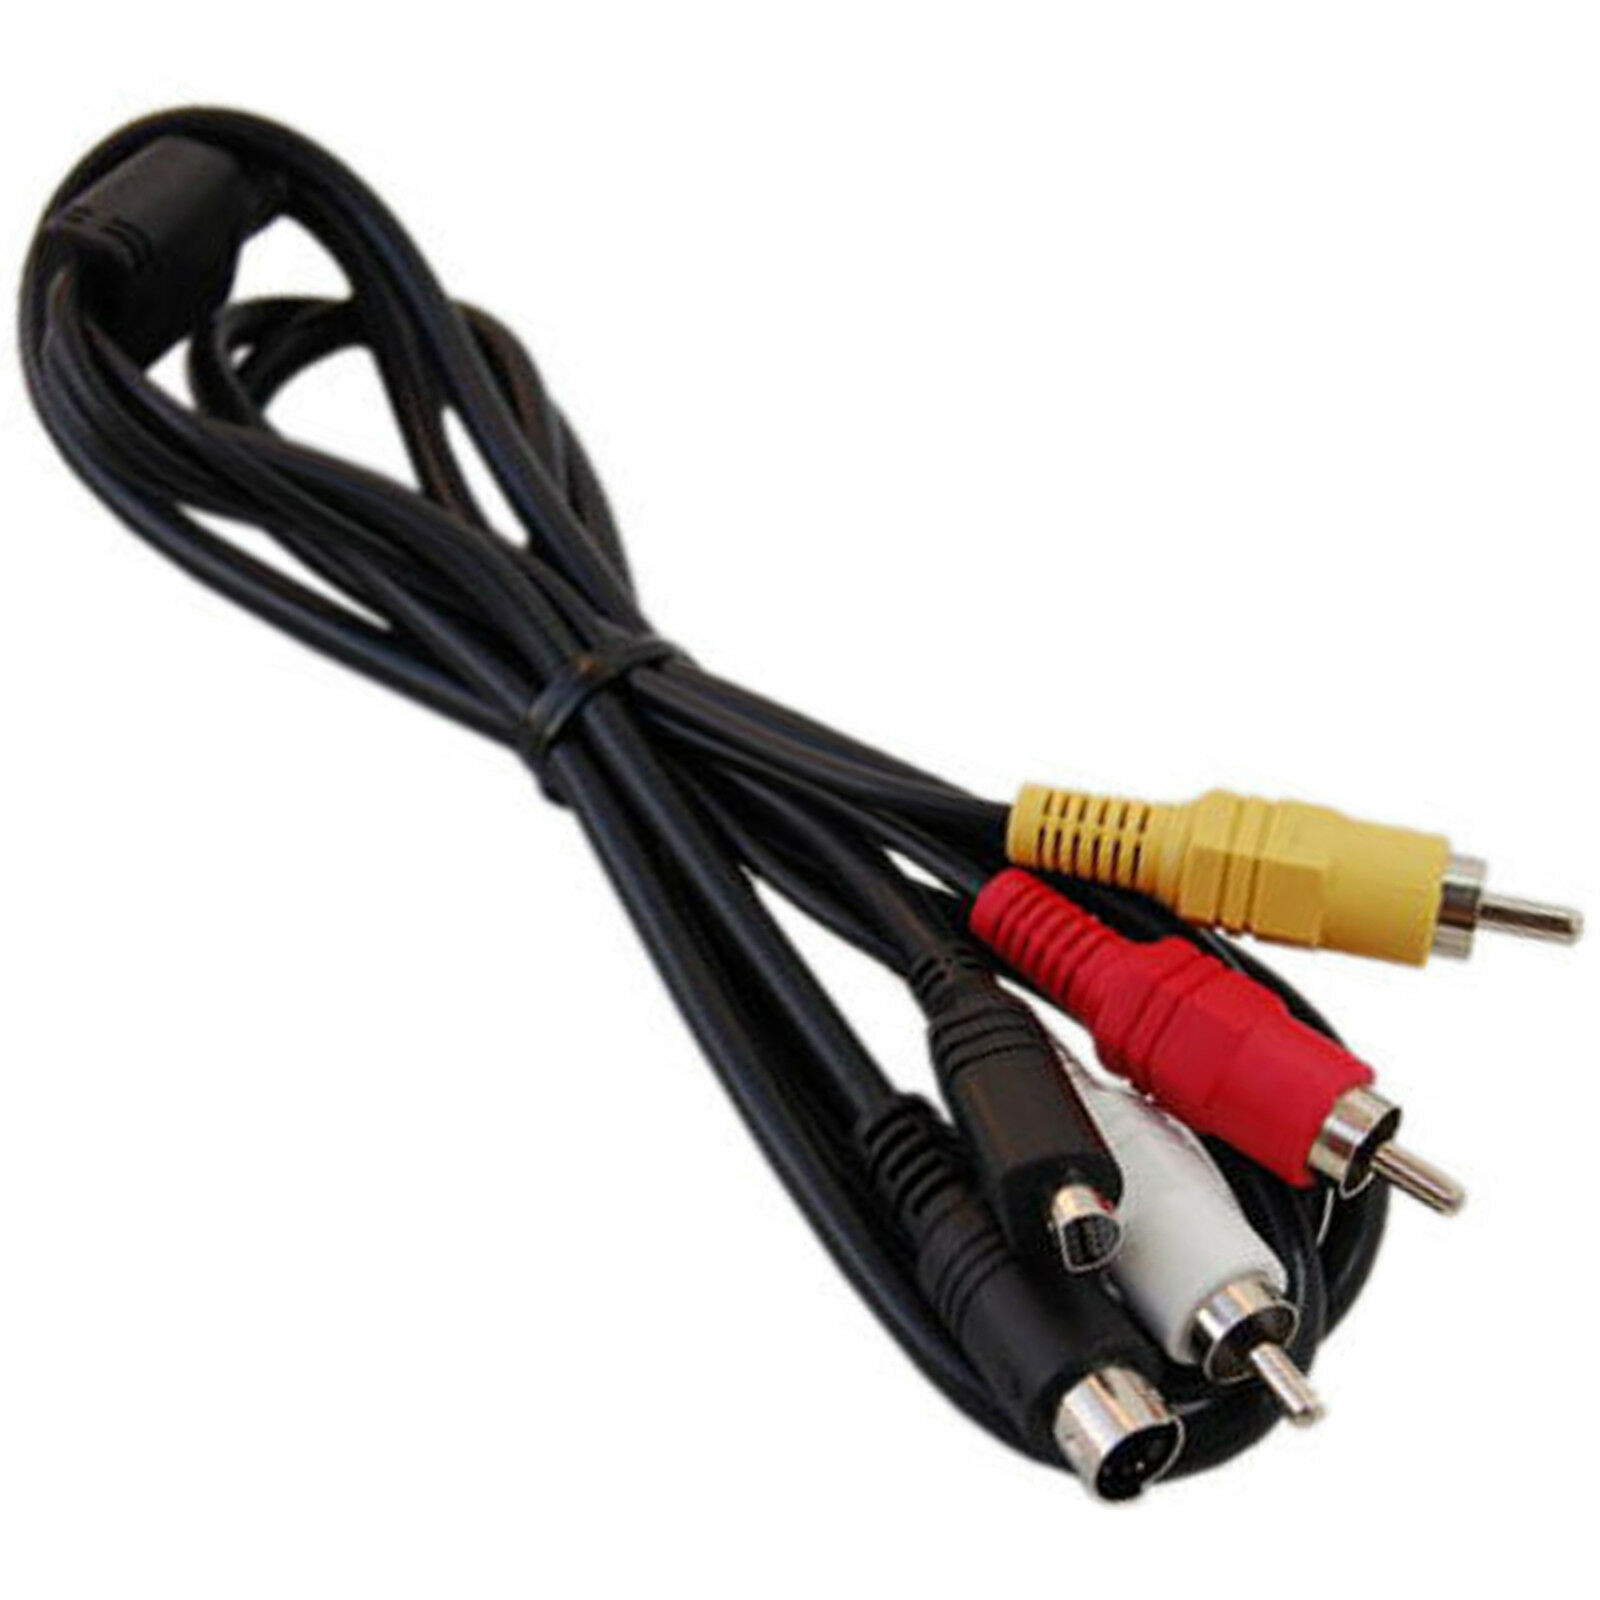 AV Cable Cord for SONY Handycam DCR-HC28 DCR-HC38 DCR-HC48 DCR-HC52 DCR-SX40 Compatible Brand: For Sony Compatible Ser